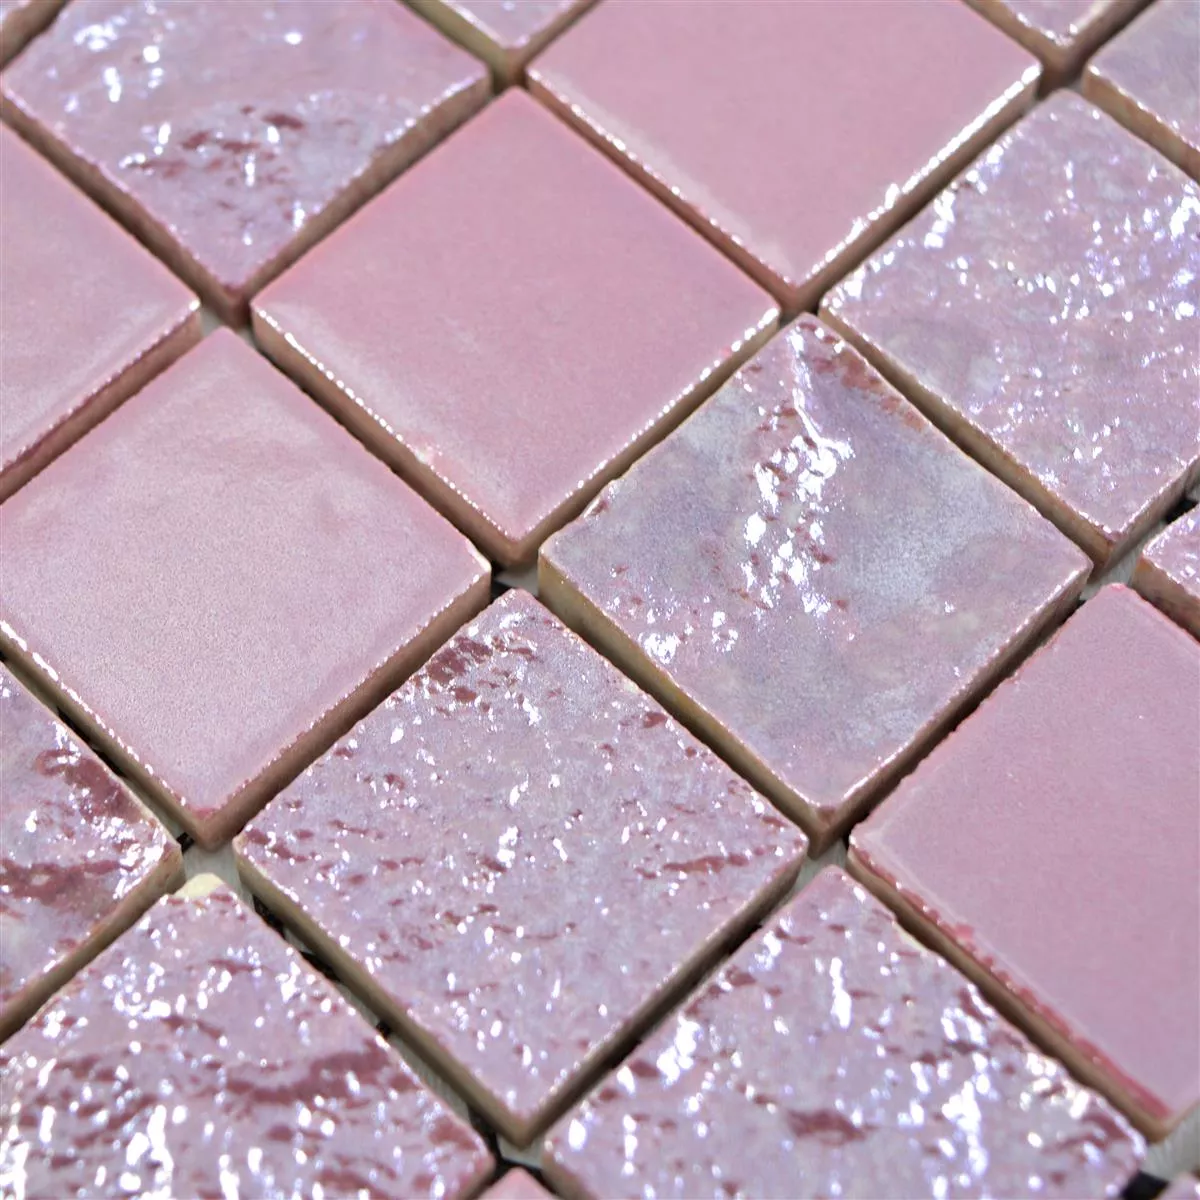 Keramické Mozaikové Dlaždice Shogun 3D Růžová Pink